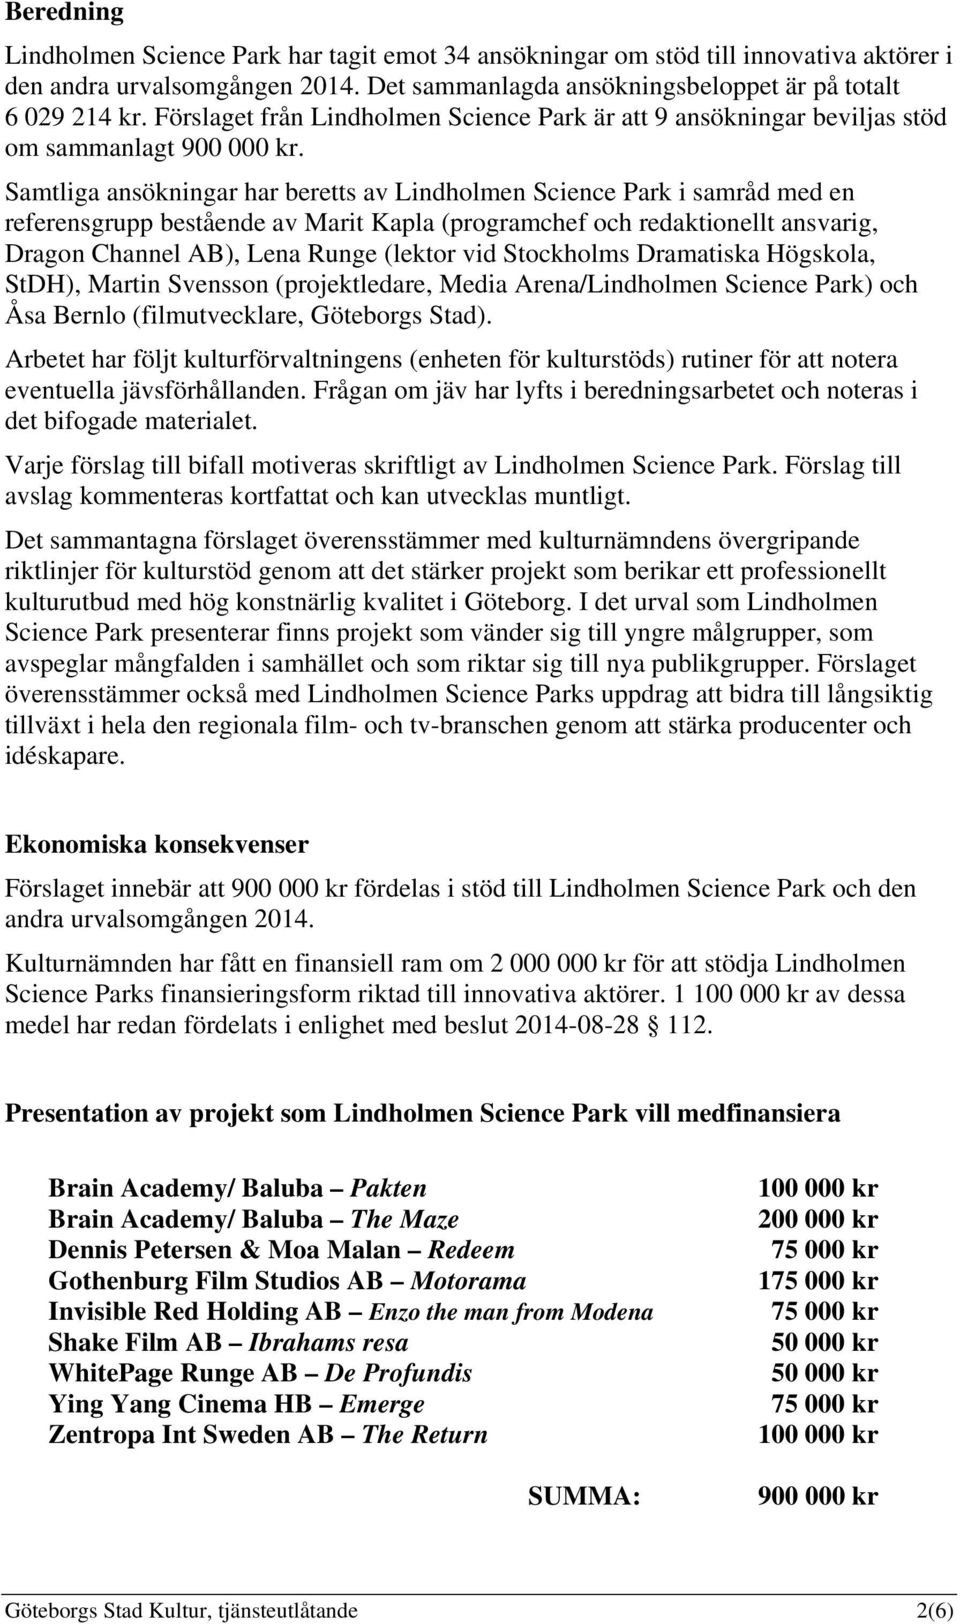 Samtliga ansökningar har beretts av Lindholmen Science Park i samråd med en referensgrupp bestående av Marit Kapla (programchef och redaktionellt ansvarig, Dragon Channel AB), Lena Runge (lektor vid